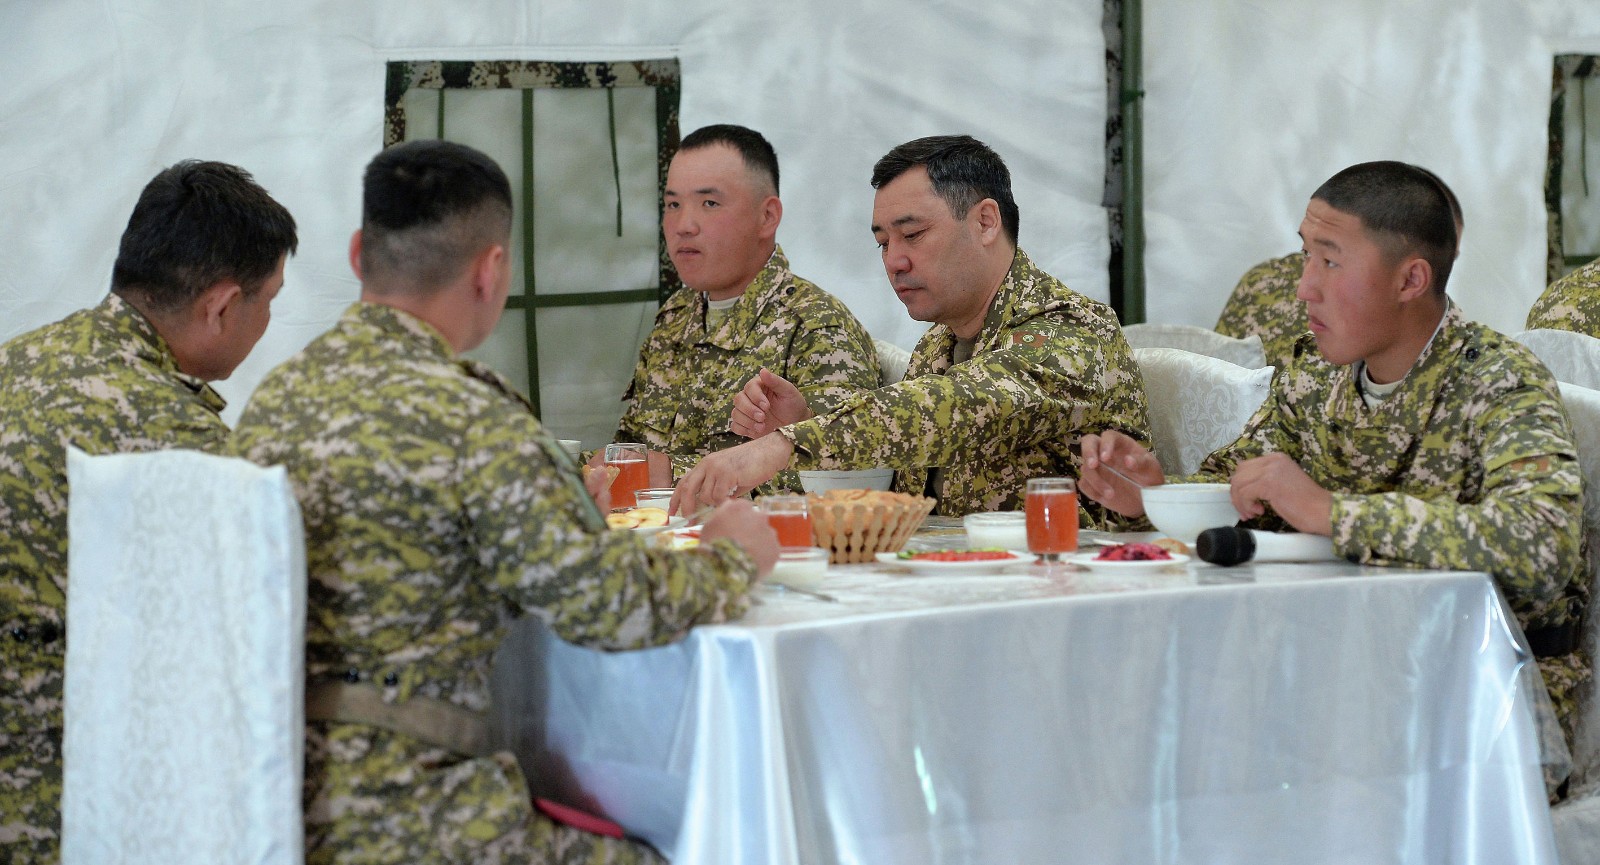 Жапаров в полевой форме пообедал с солдатами